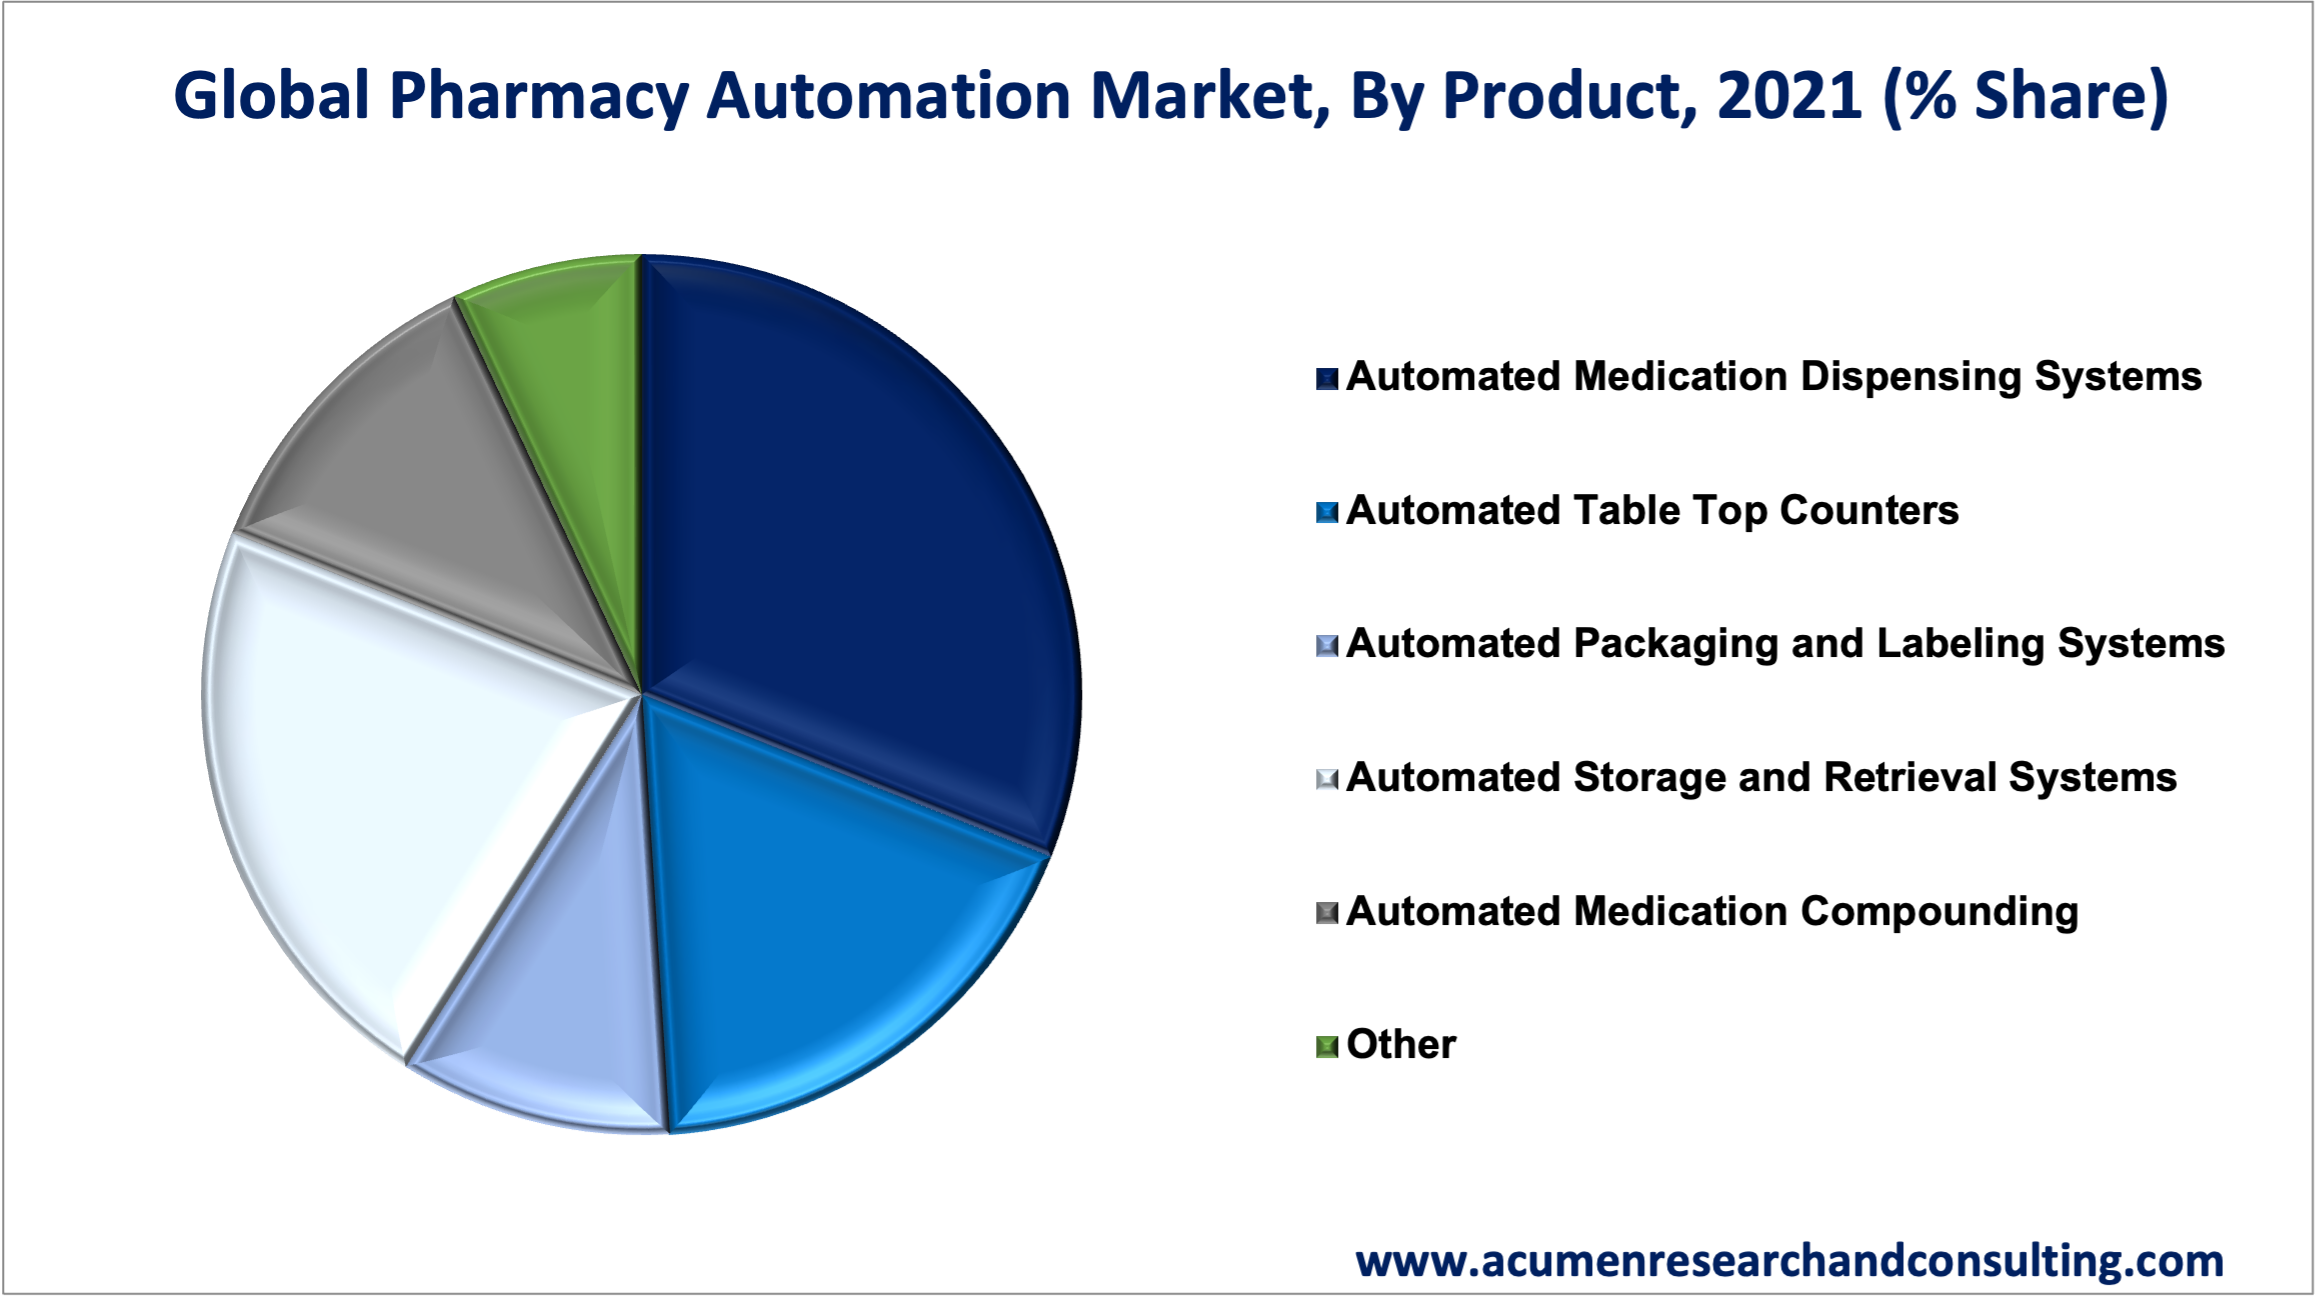 Pharmacy Automation Market Size